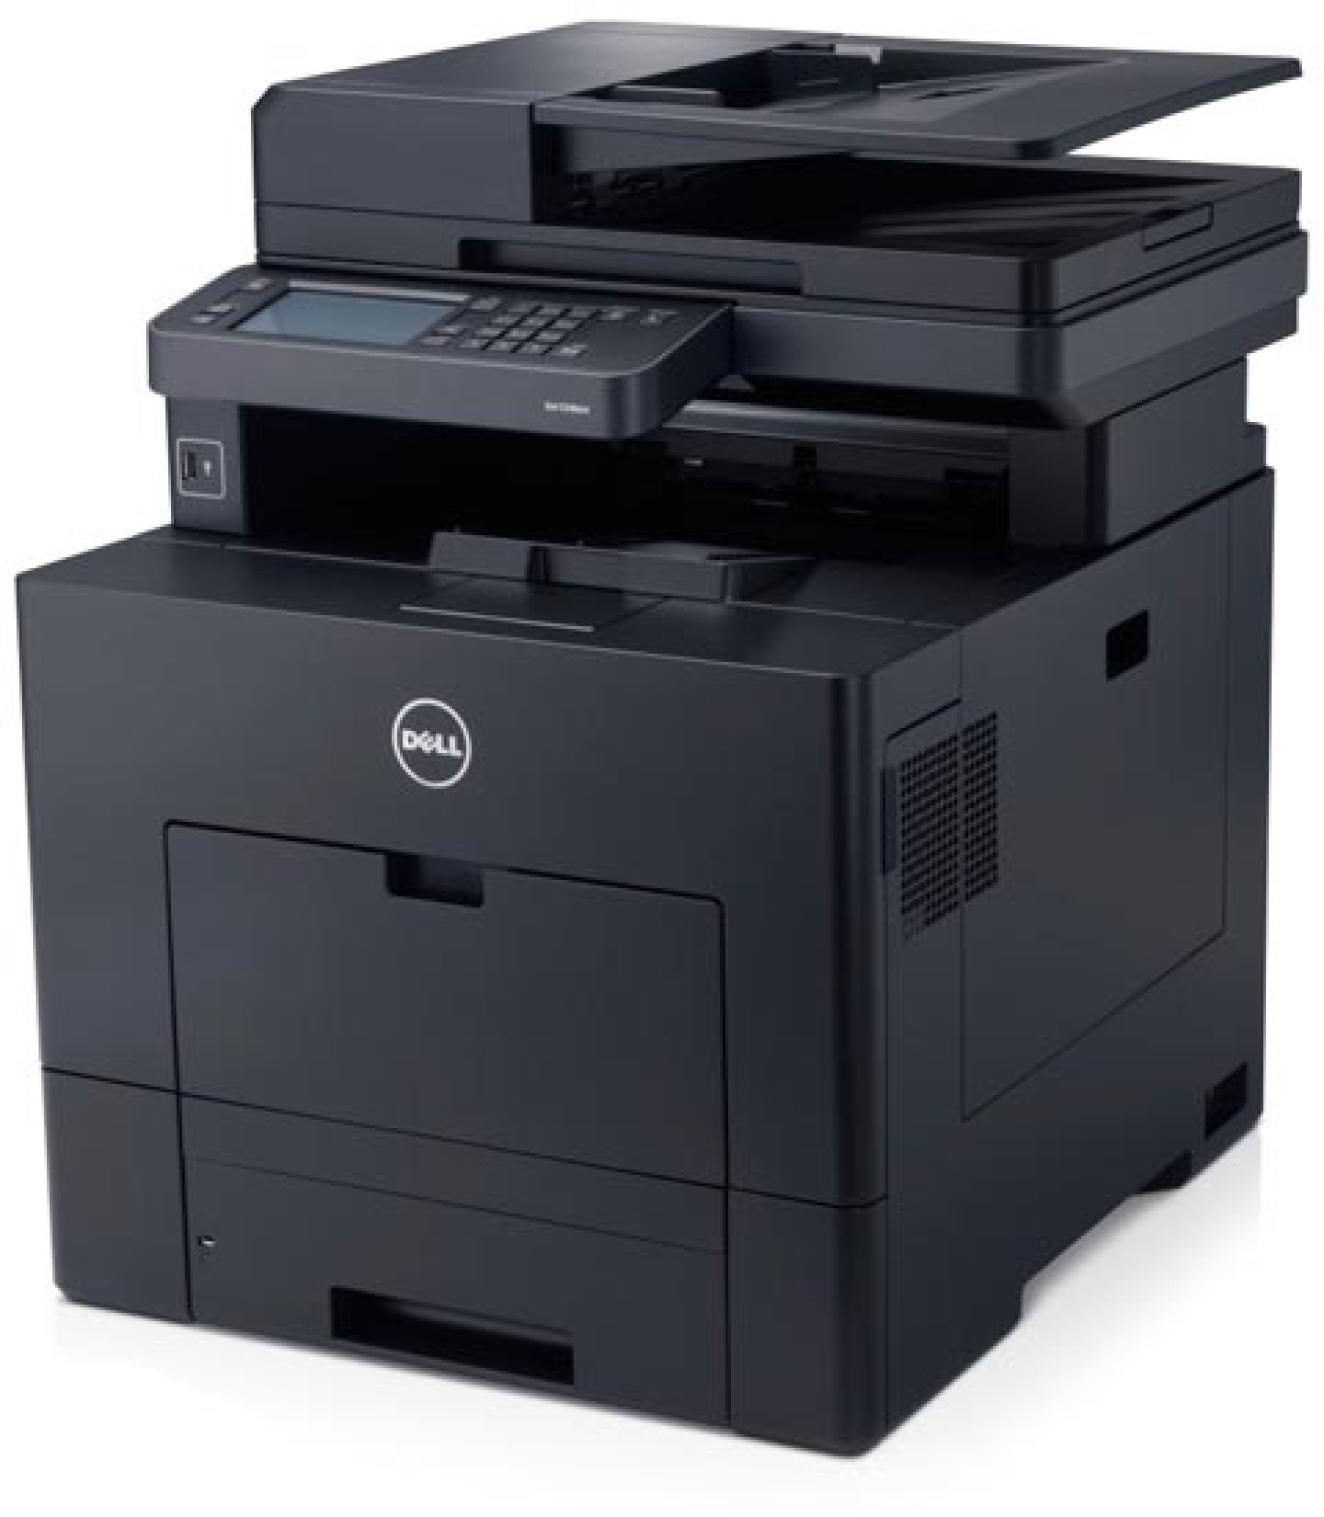 Náplně do tiskárny Dell C3765dnf